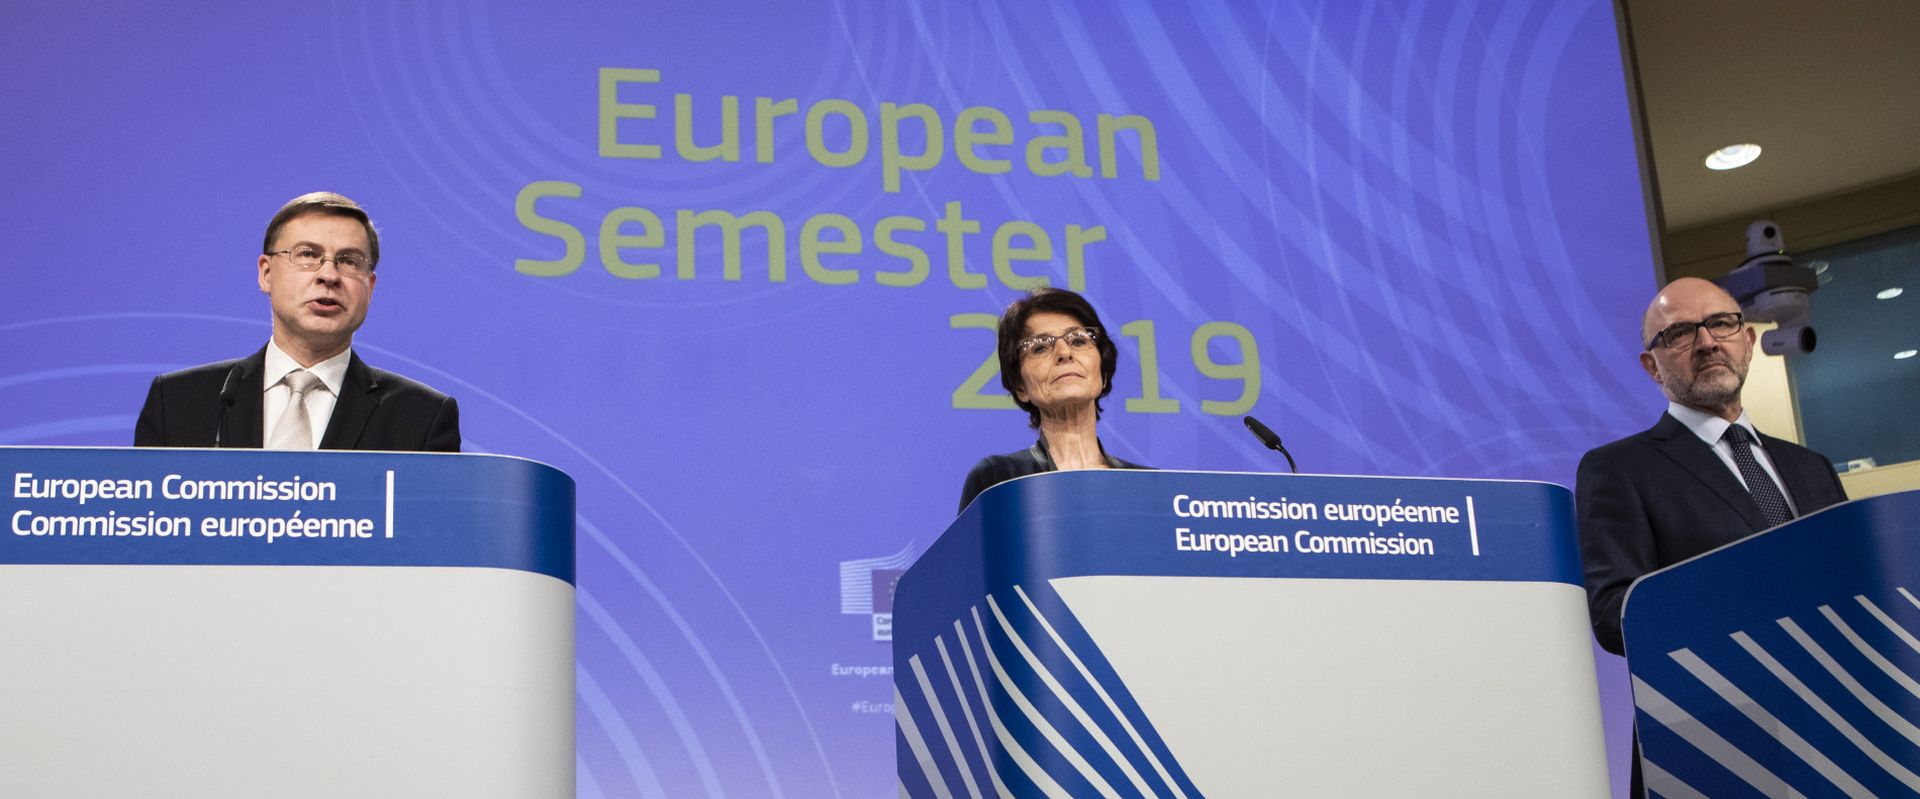 Preporuke Komisije državama članicama – Proljetni paket Europskog semestra 2019.